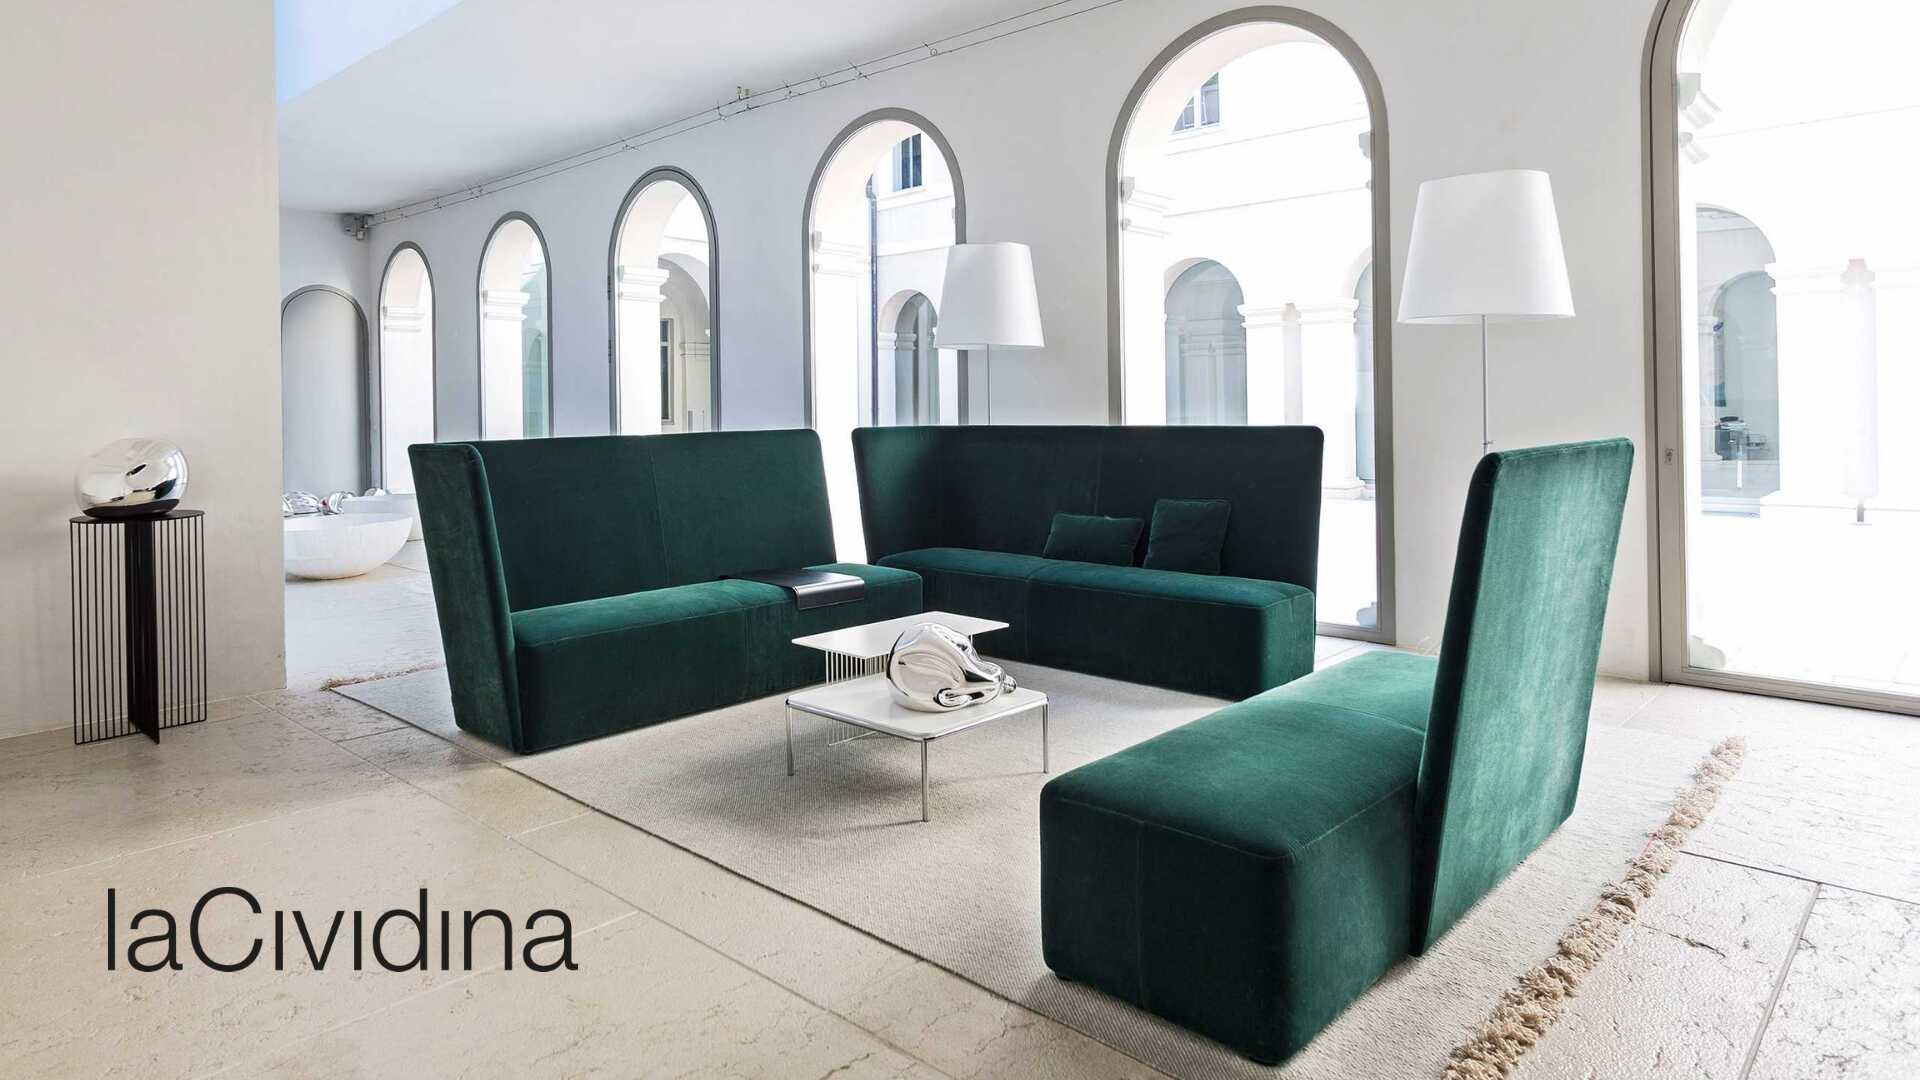 LaCividina (ラチヴィデーナ) イタリア高級コントラクト家具